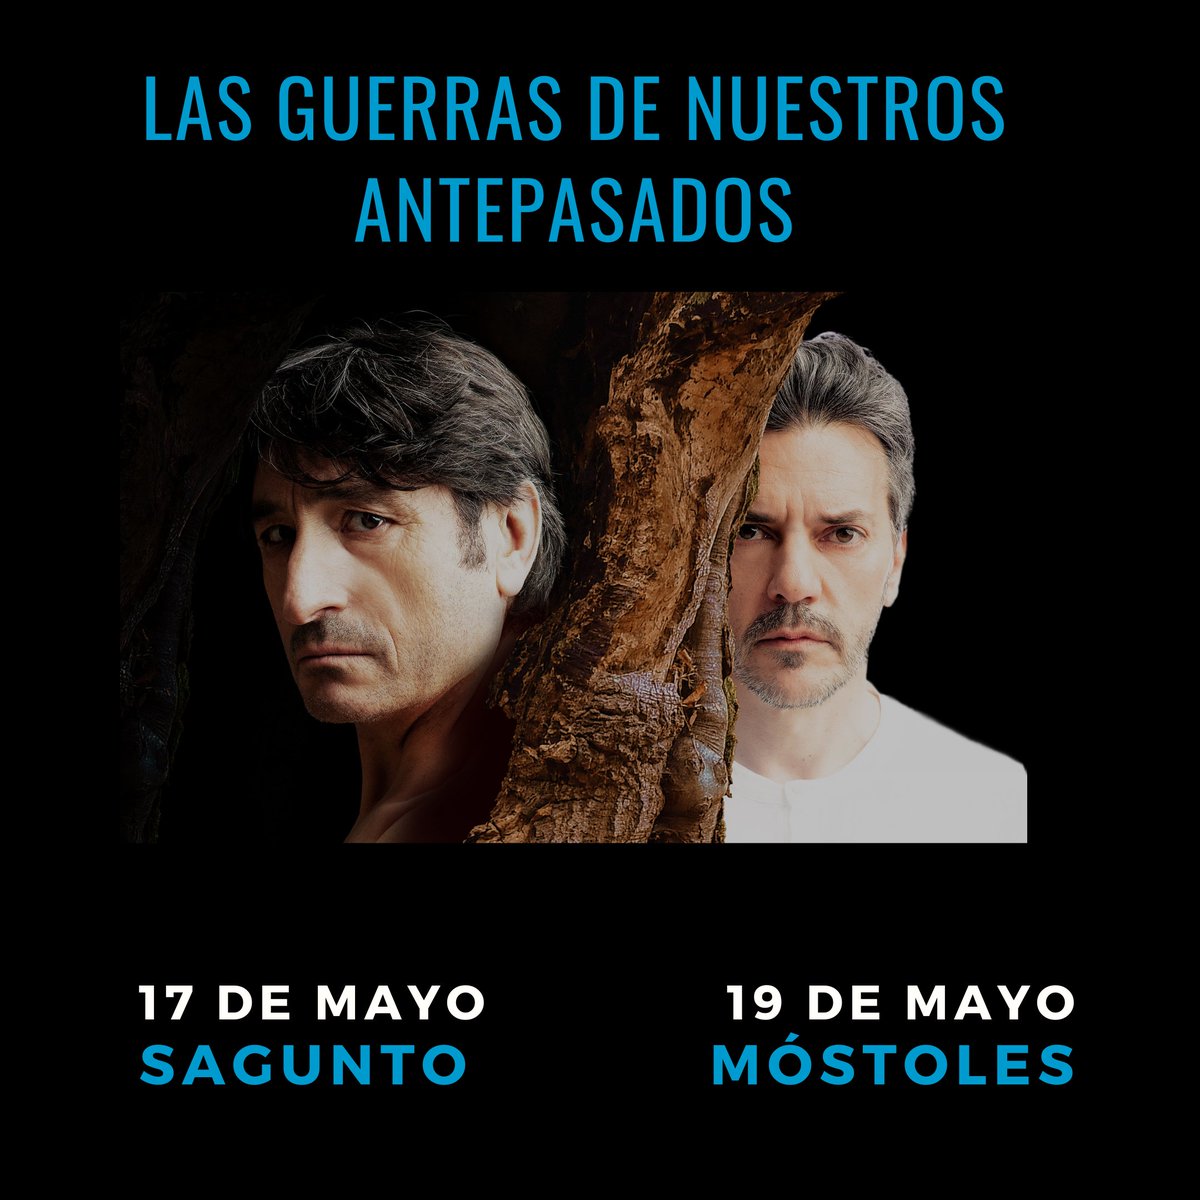 Nuevas paradas para #CarmeloGómez y @hermosoarnao en la gira de #LasGuerrasDeNuestrosAntepasados:

📍 Sagunto el 17 de mayo 🗓️ en el C.M.C Port de Sagunt

📍 Móstoles el 19 de mayo 🗓️ en el Teatro El Bosque

Un texto de #MiguelDelibes bajo la dirección de @tolcachirc 🔥